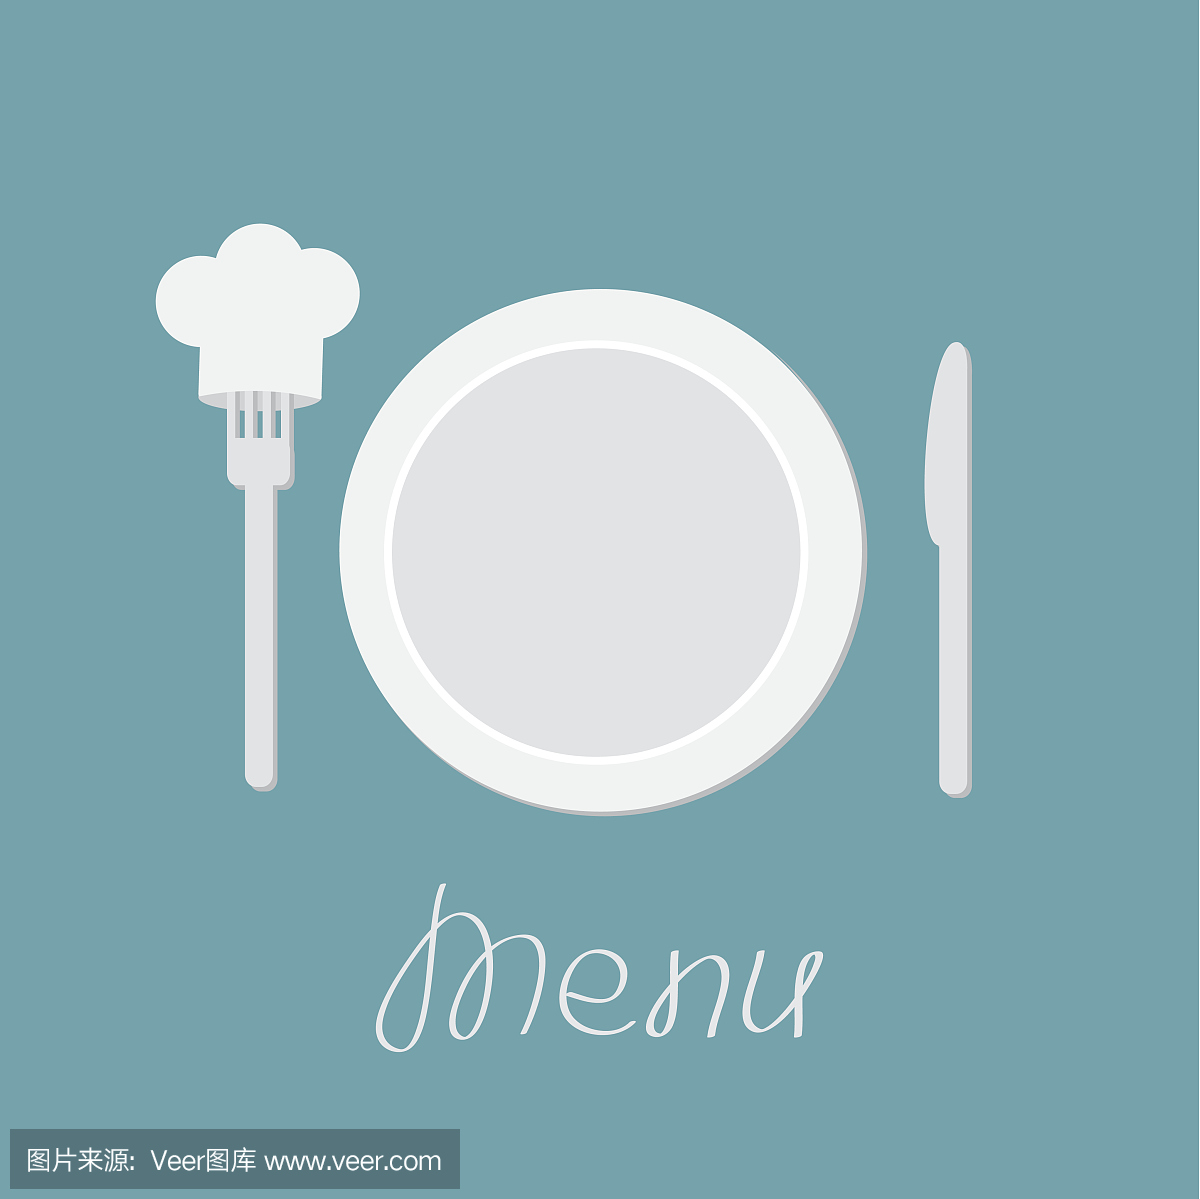 盘子,刀和厨师的帽子在叉子上。菜单卡。